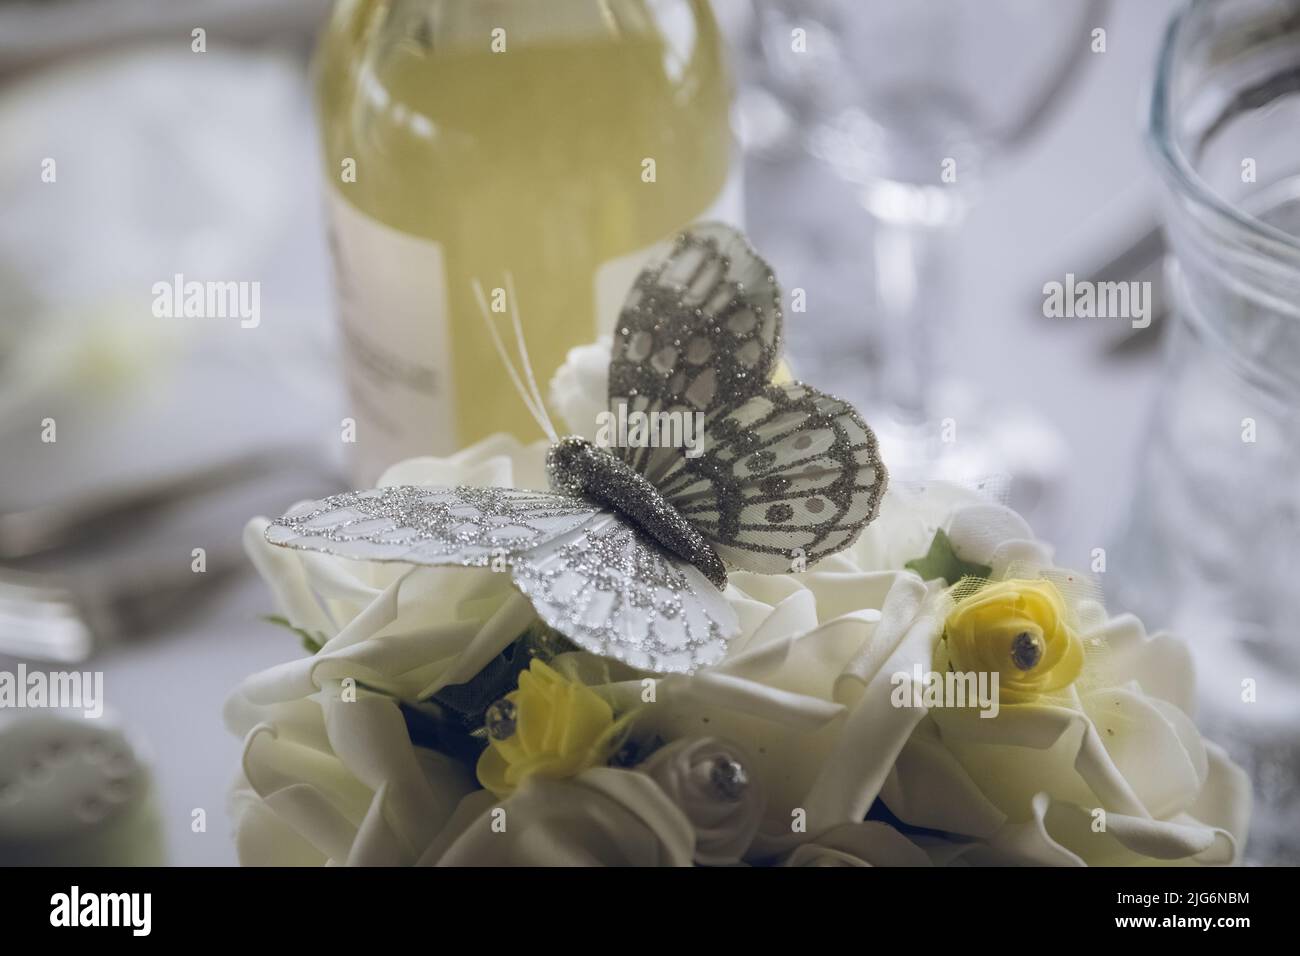 Eine Nahaufnahme eines Schmetterlings der Hochzeitstisch-Dekoration, umgeben von anderen gelben Dekorationen Stockfoto